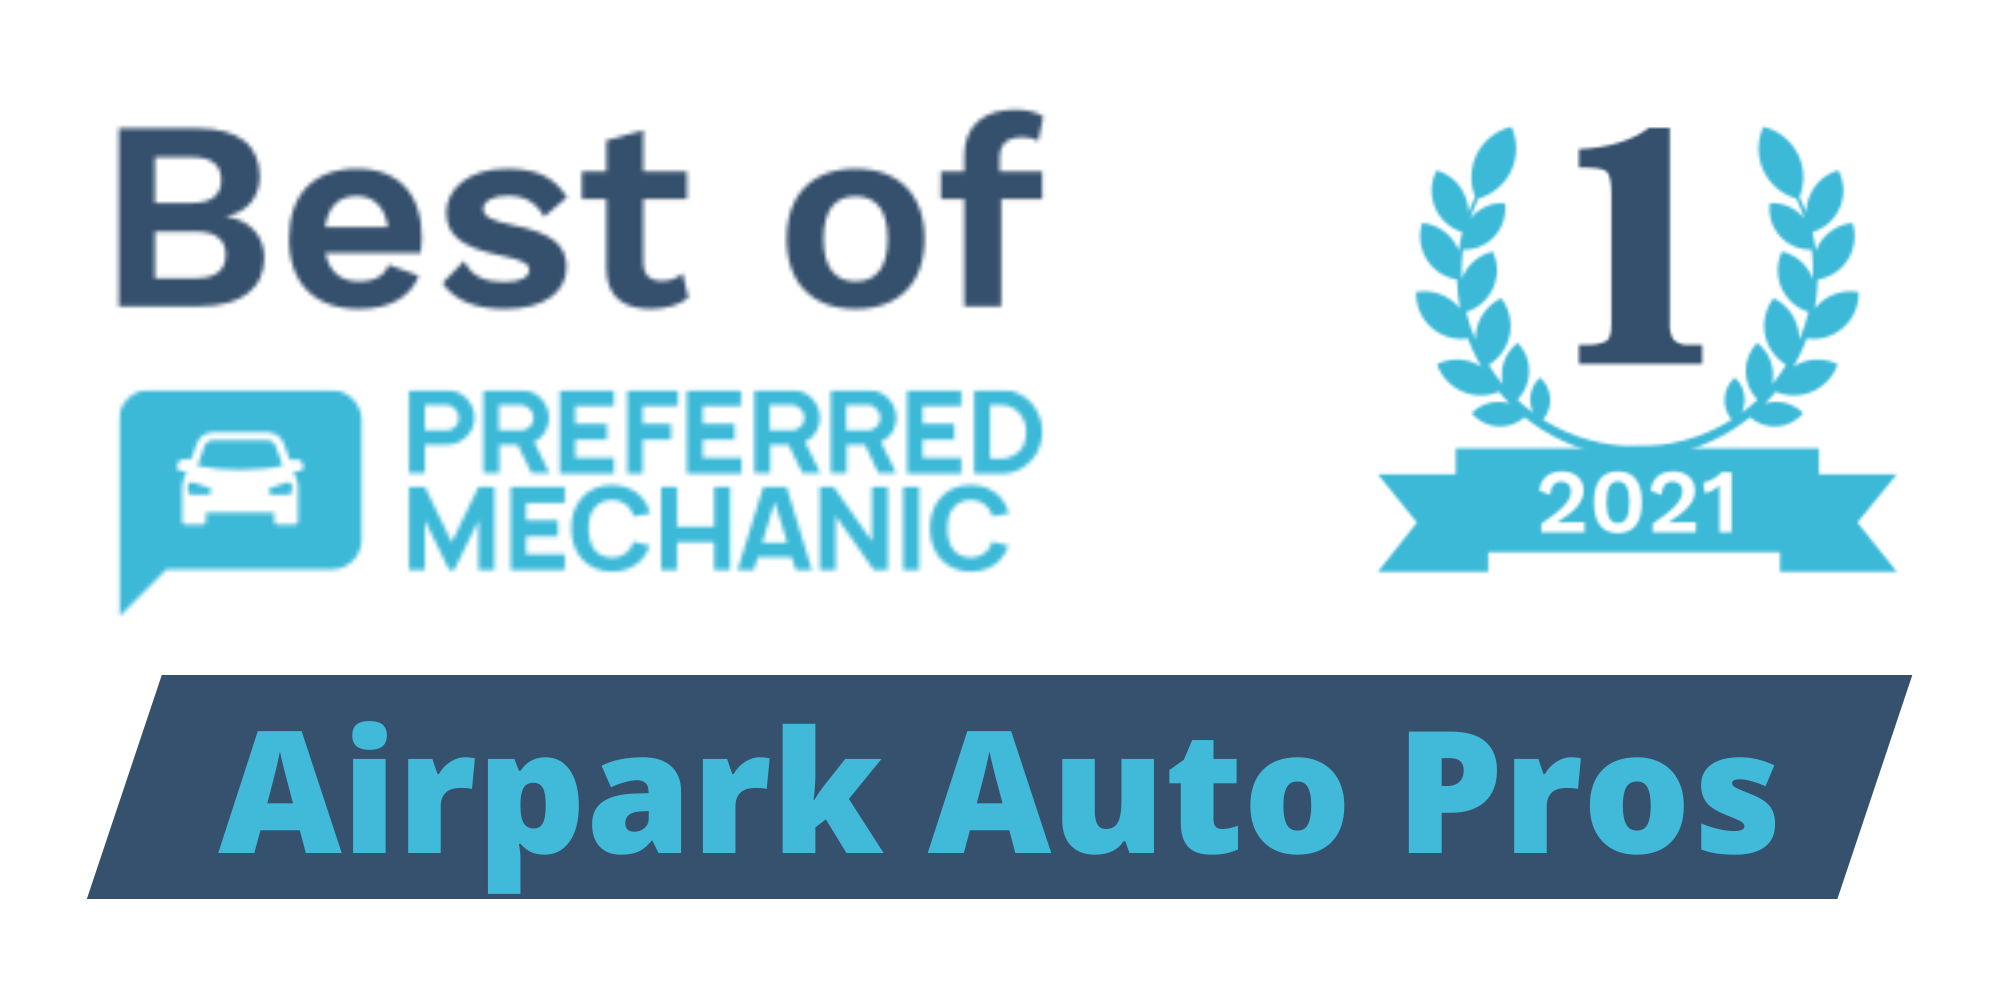 Best Auto Repair Badge, Airpark Auto Pros